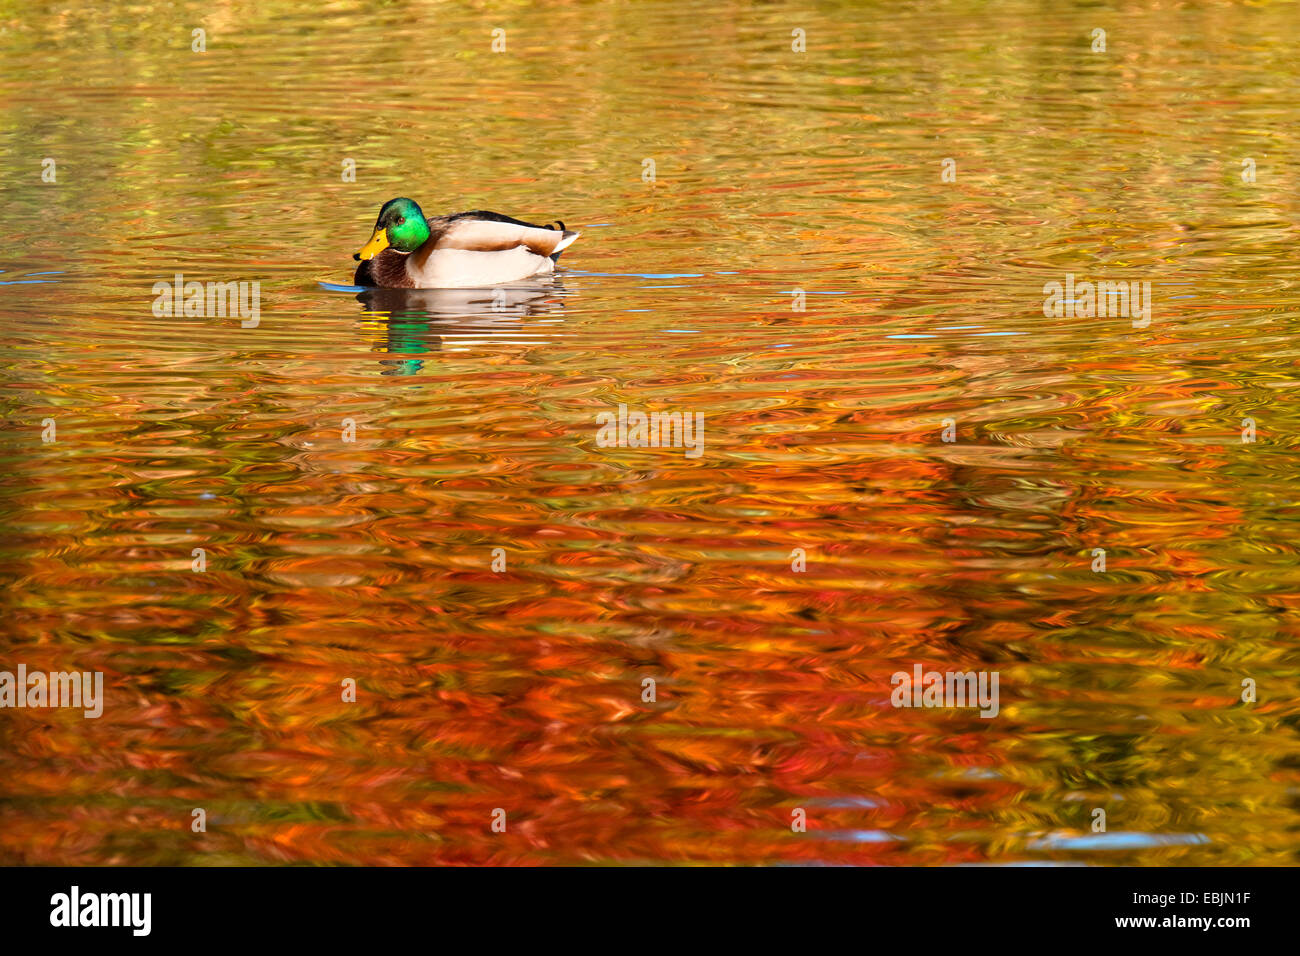 Le Canard colvert (Anas platyrhynchos), homme natation sur un étang, automne arbres se reflétant dans l'eau, de l'Allemagne, Rhénanie du Nord-Westphalie Banque D'Images